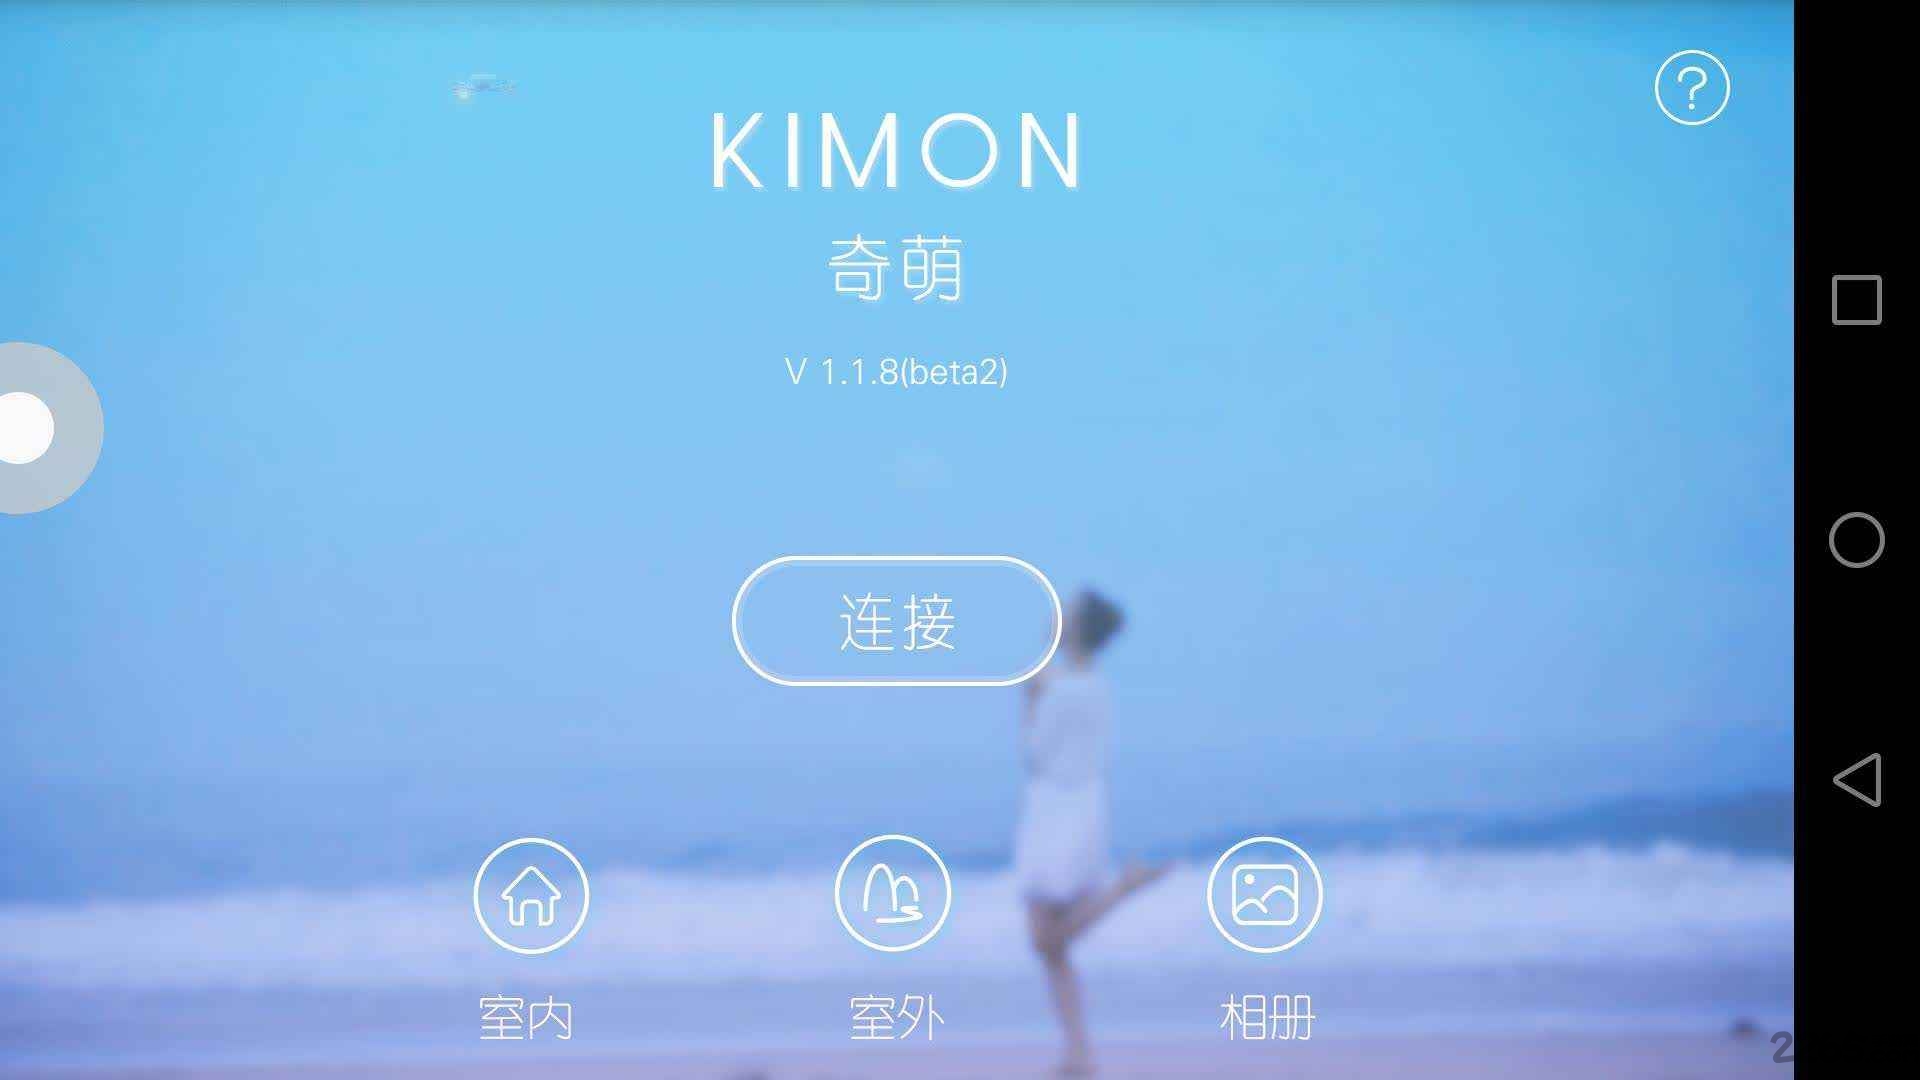 kimon